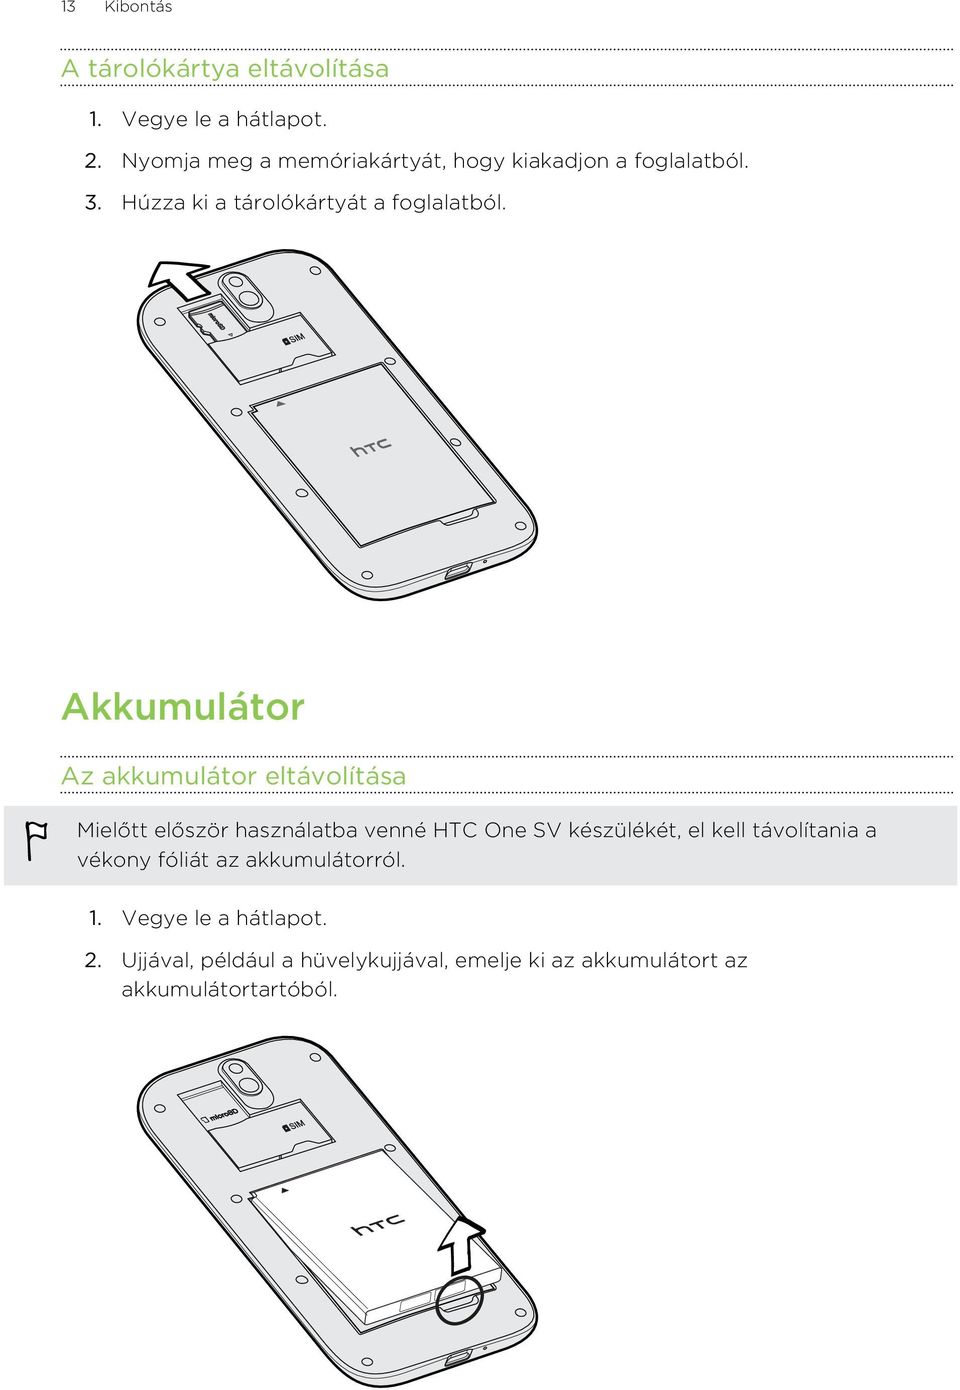 Akkumulátor Az akkumulátor eltávolítása Mielőtt először használatba venné HTC One SV készülékét, el kell